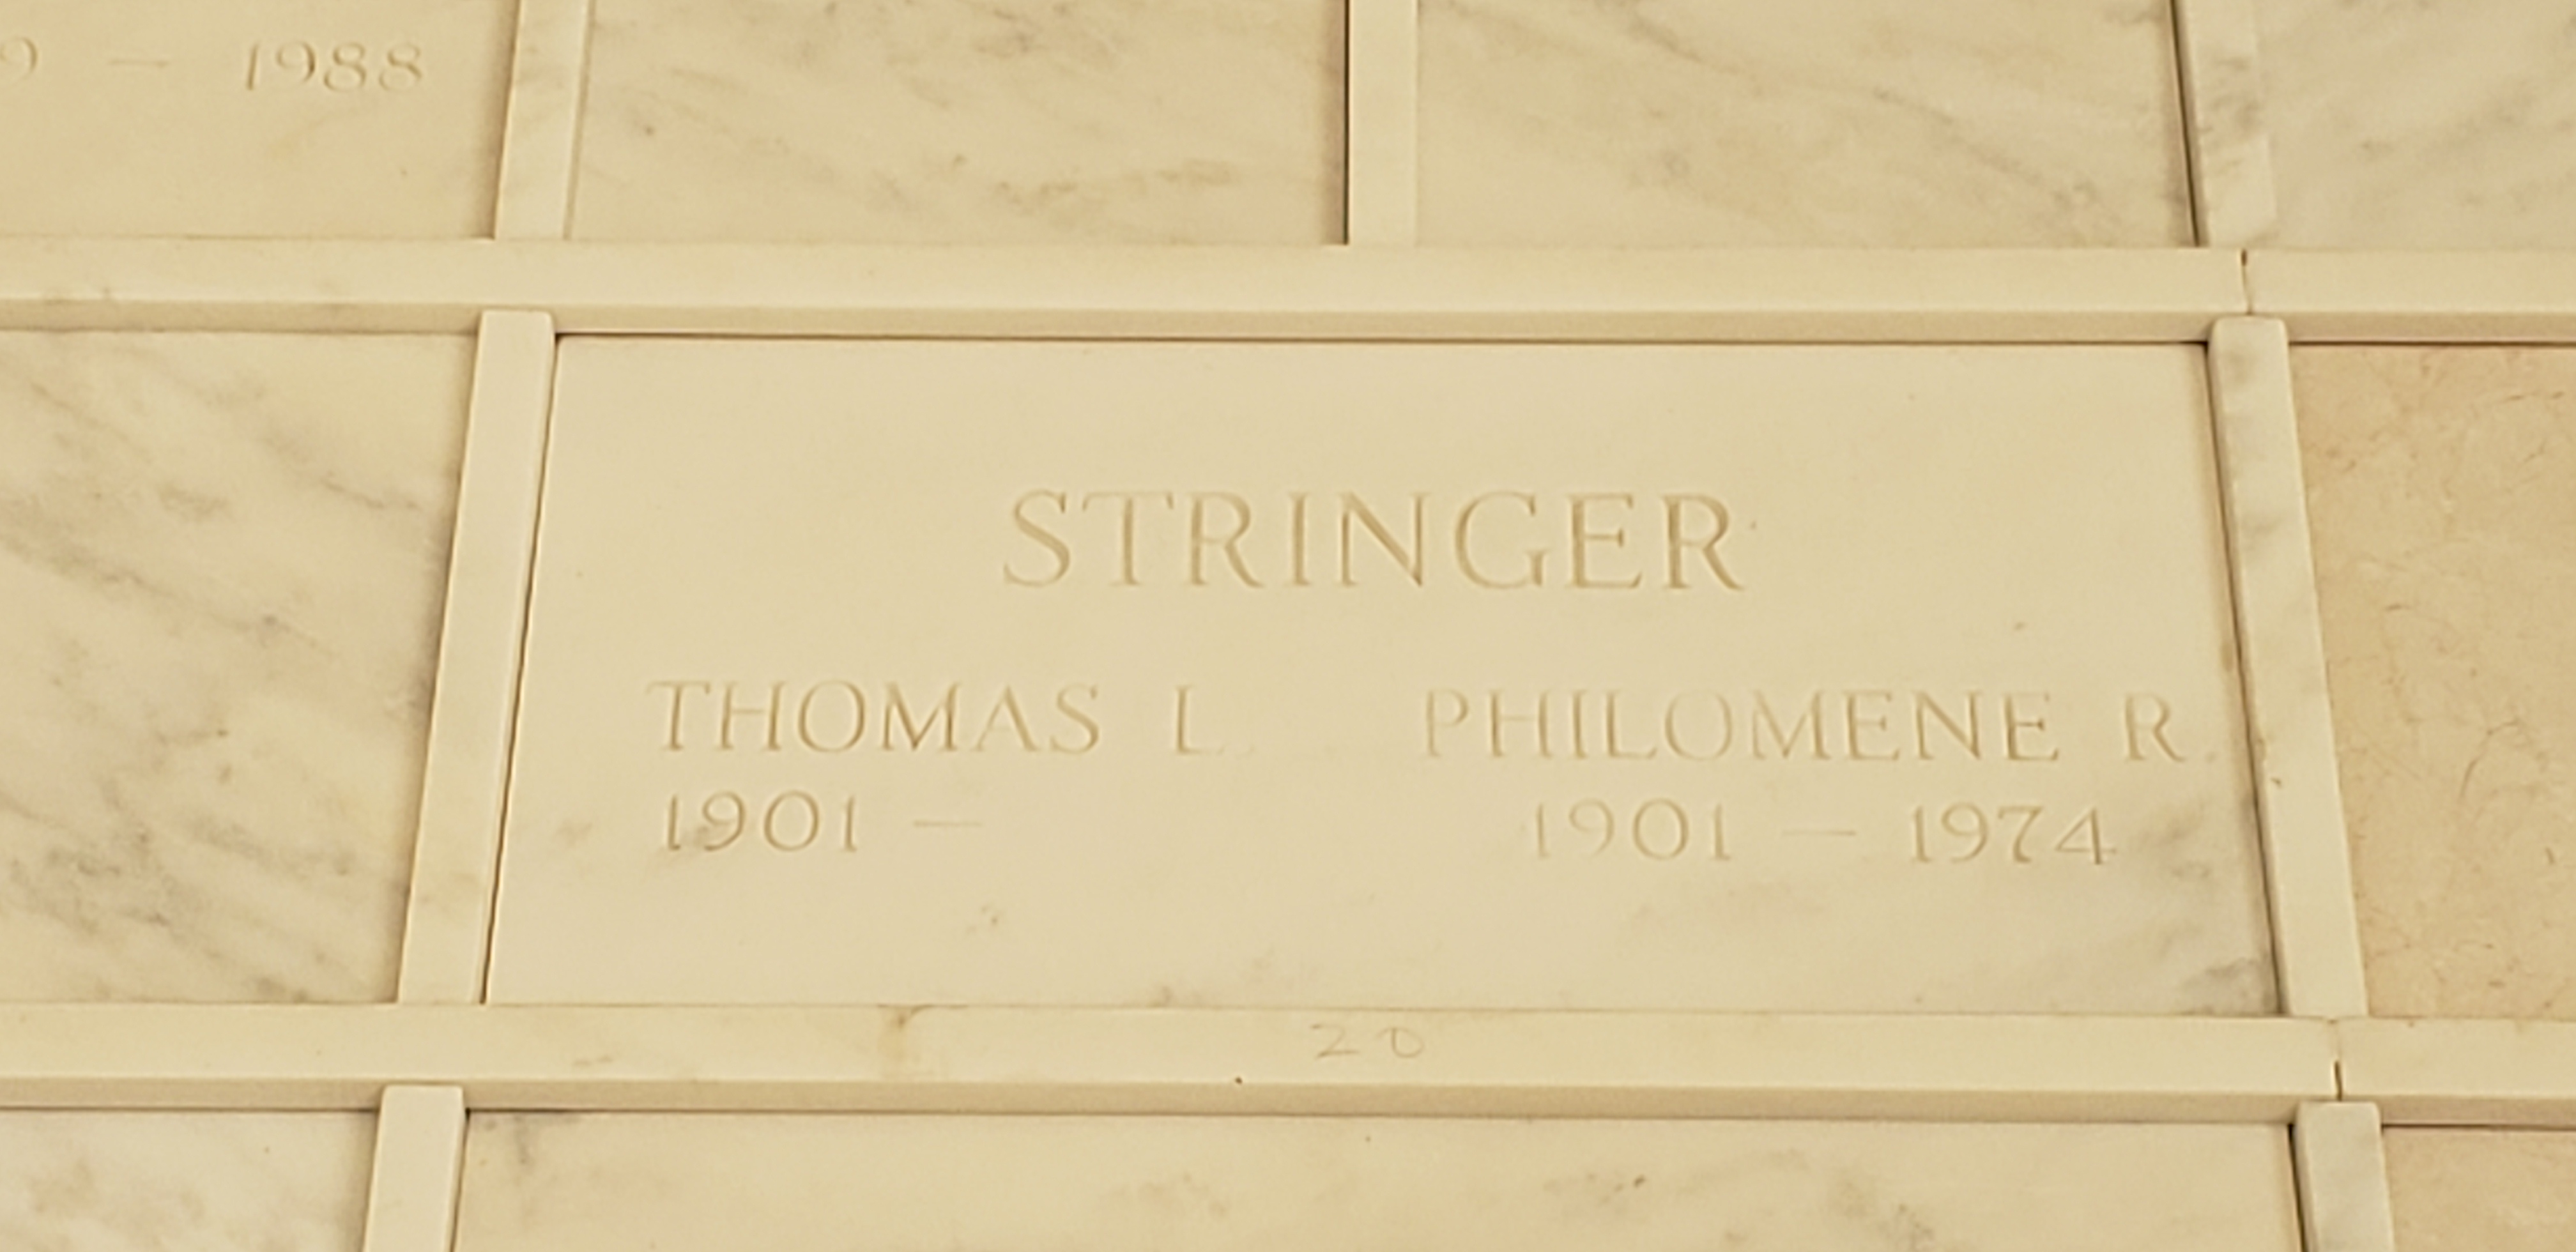 Philomene R Stringer